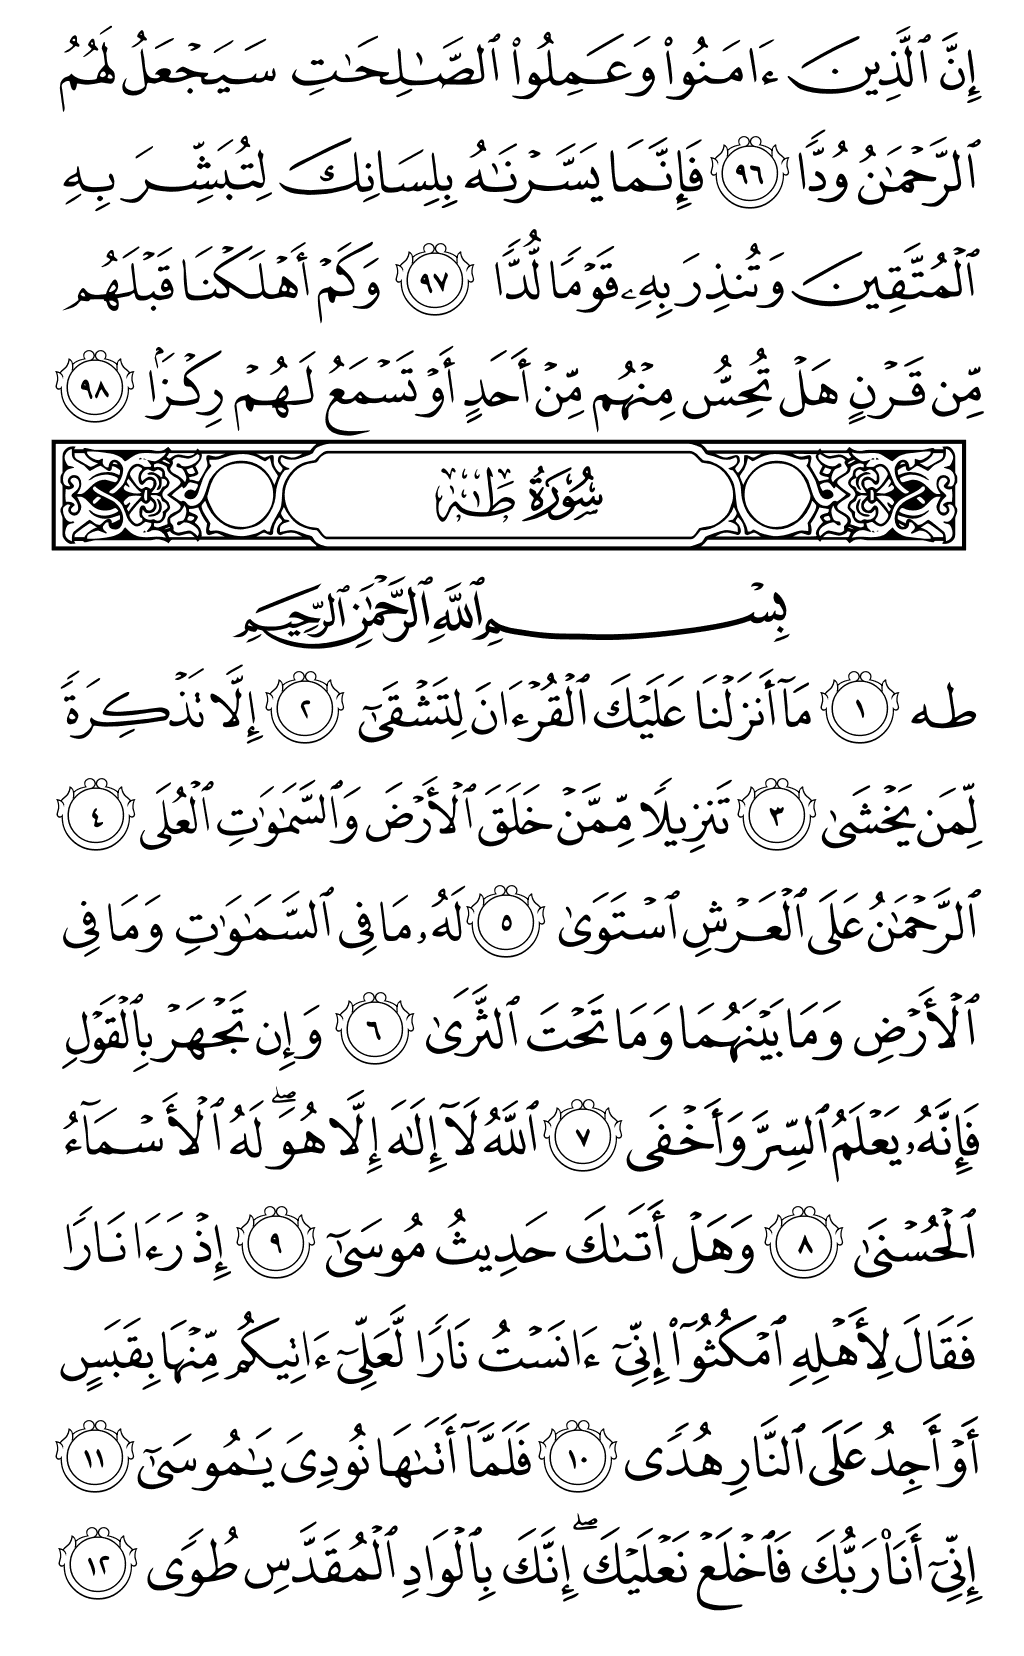 الصفحة رقم 312 من القرآن الكريم